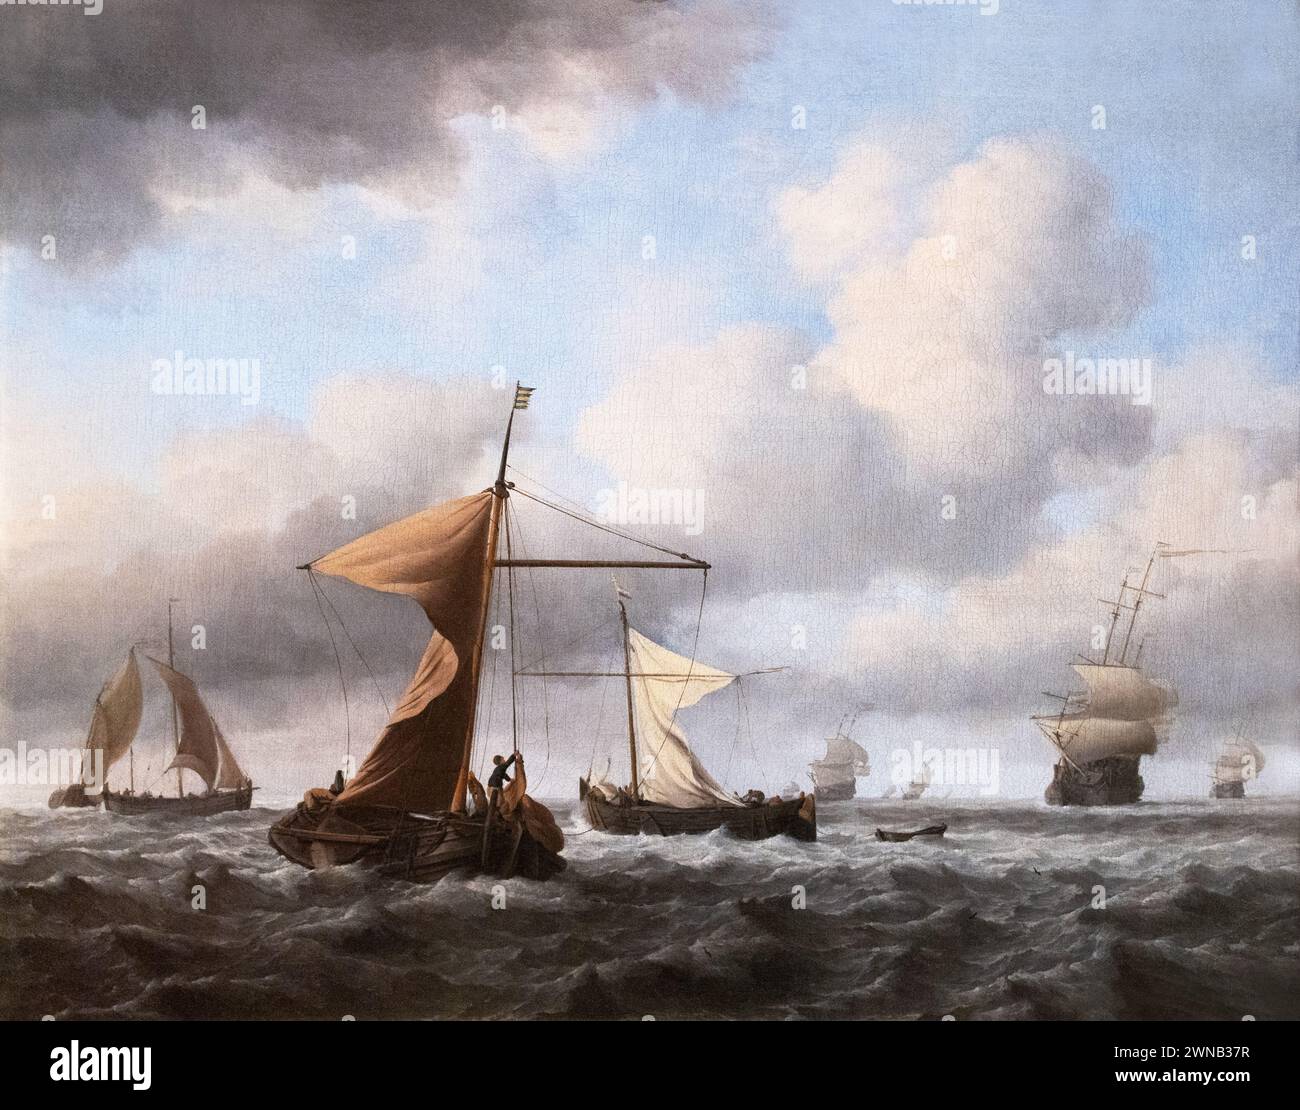 Willem van de Velde la peinture jeune ; 'A Brisk Breeze', c1665 paysage marin ; peintre marin néerlandais et peinture, - années 1600 - XVIIe siècle Banque D'Images